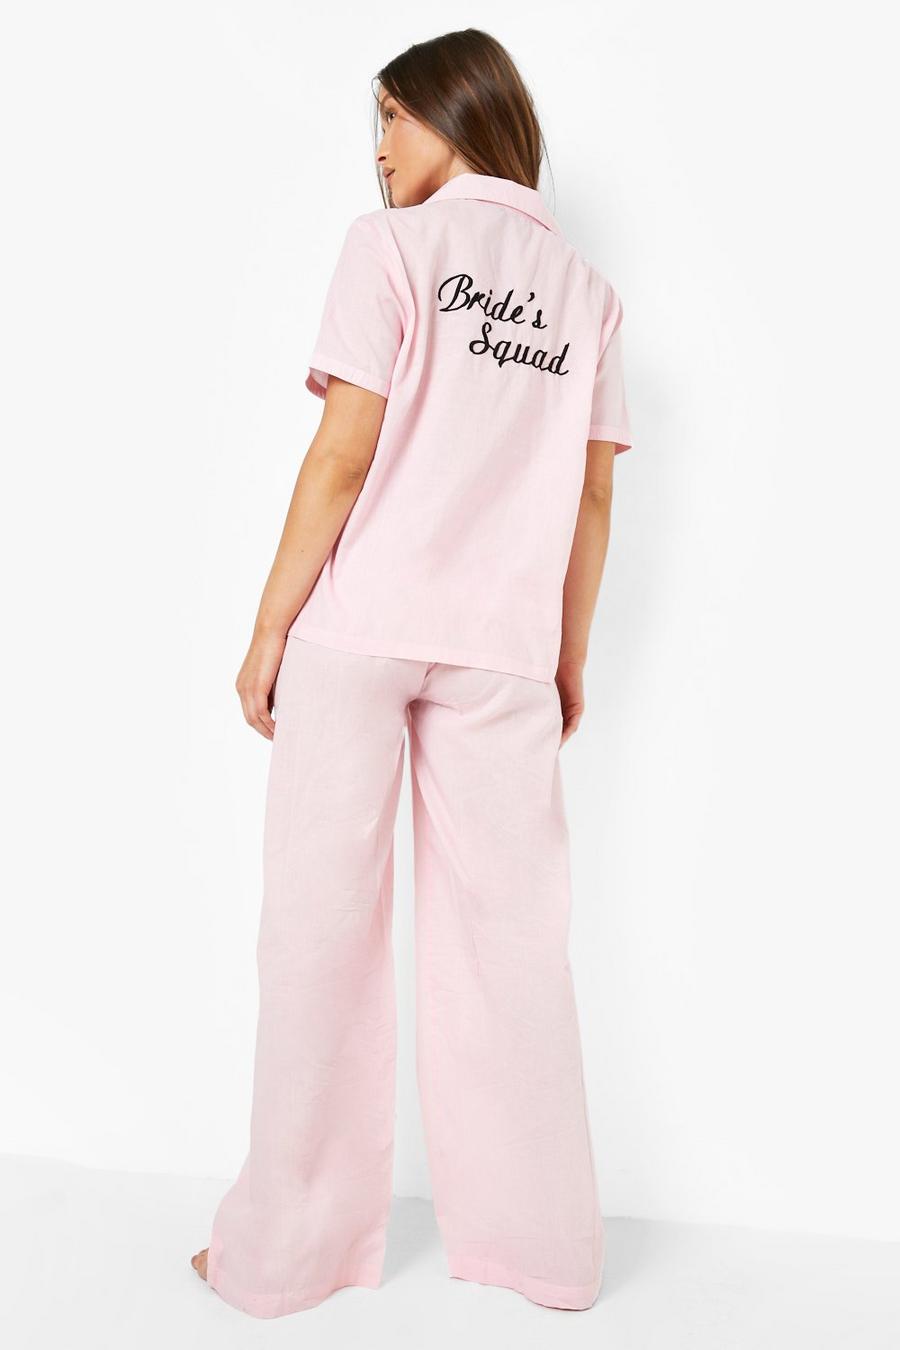 Pyjama-Set aus Baumwolle mit Bride's Squad Stickerei, Blush rose